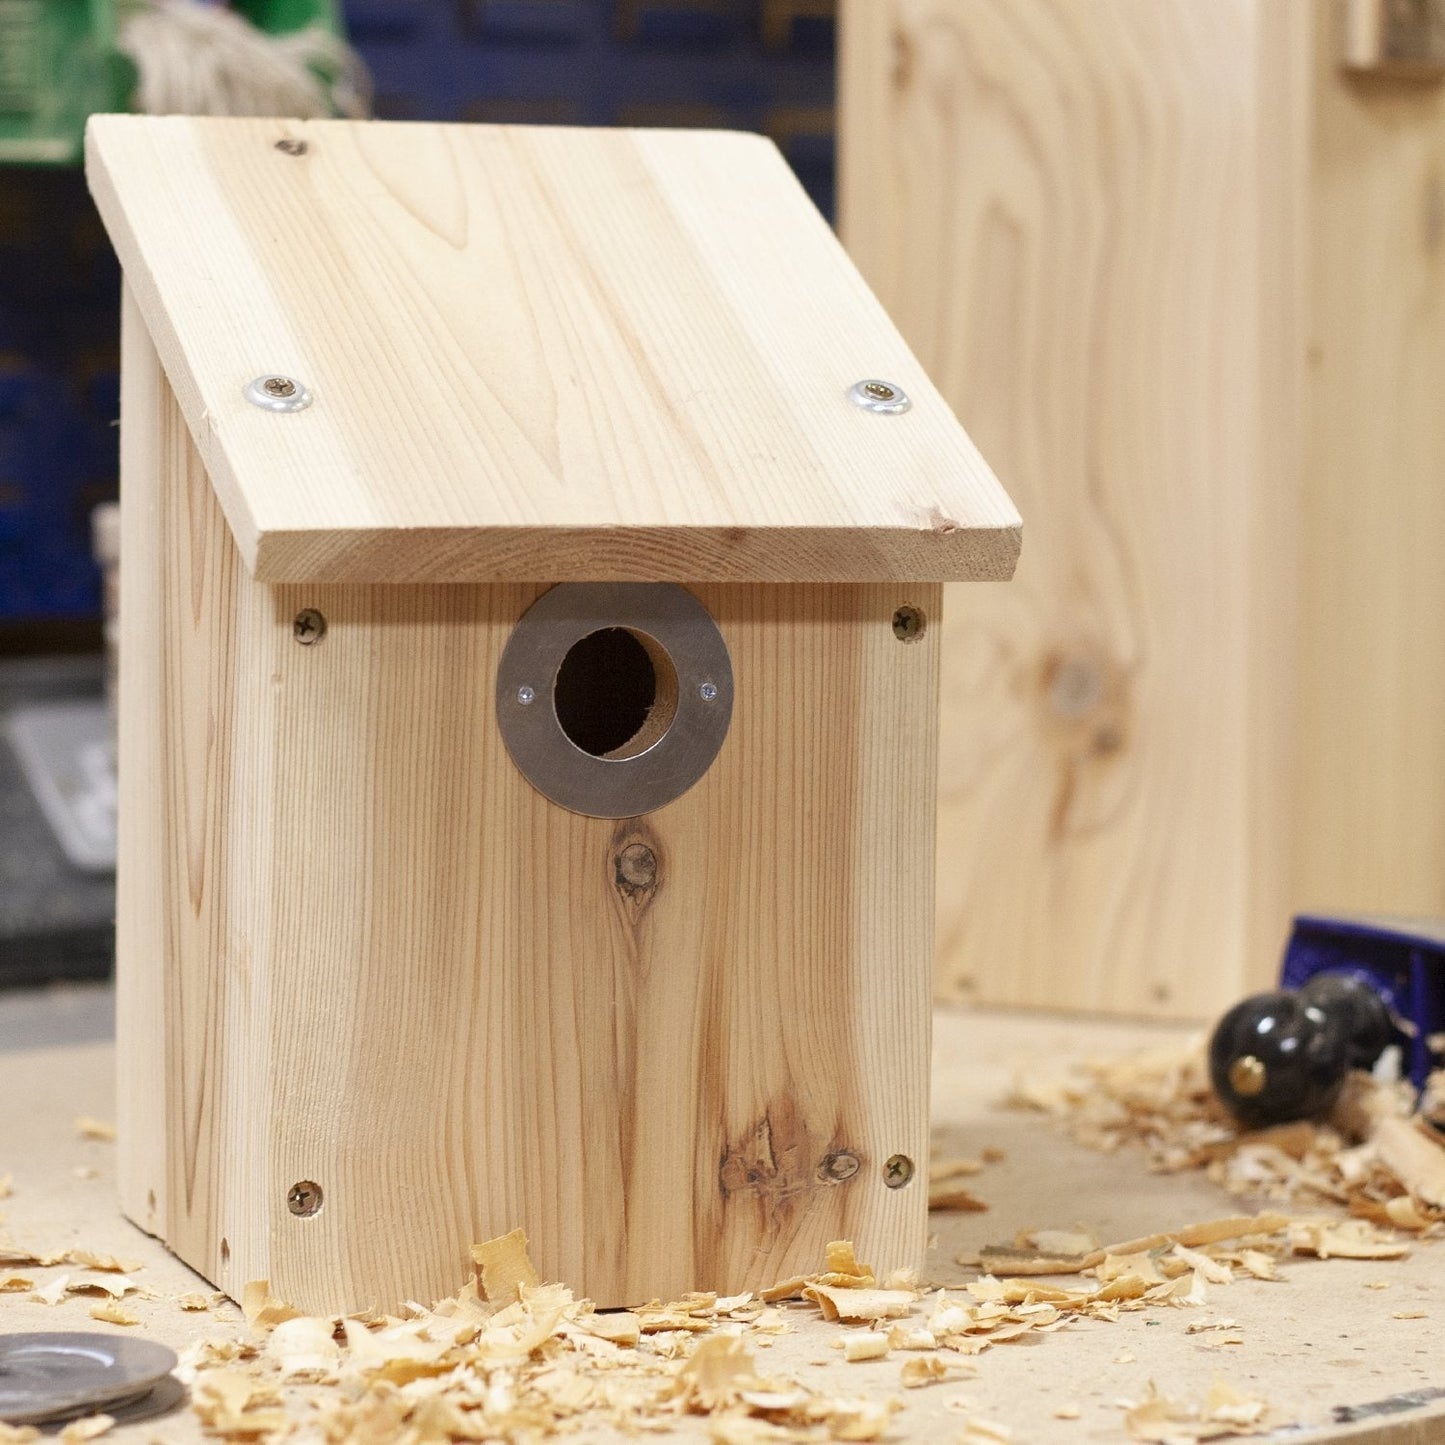 Nest Box in Wildlife World workshop